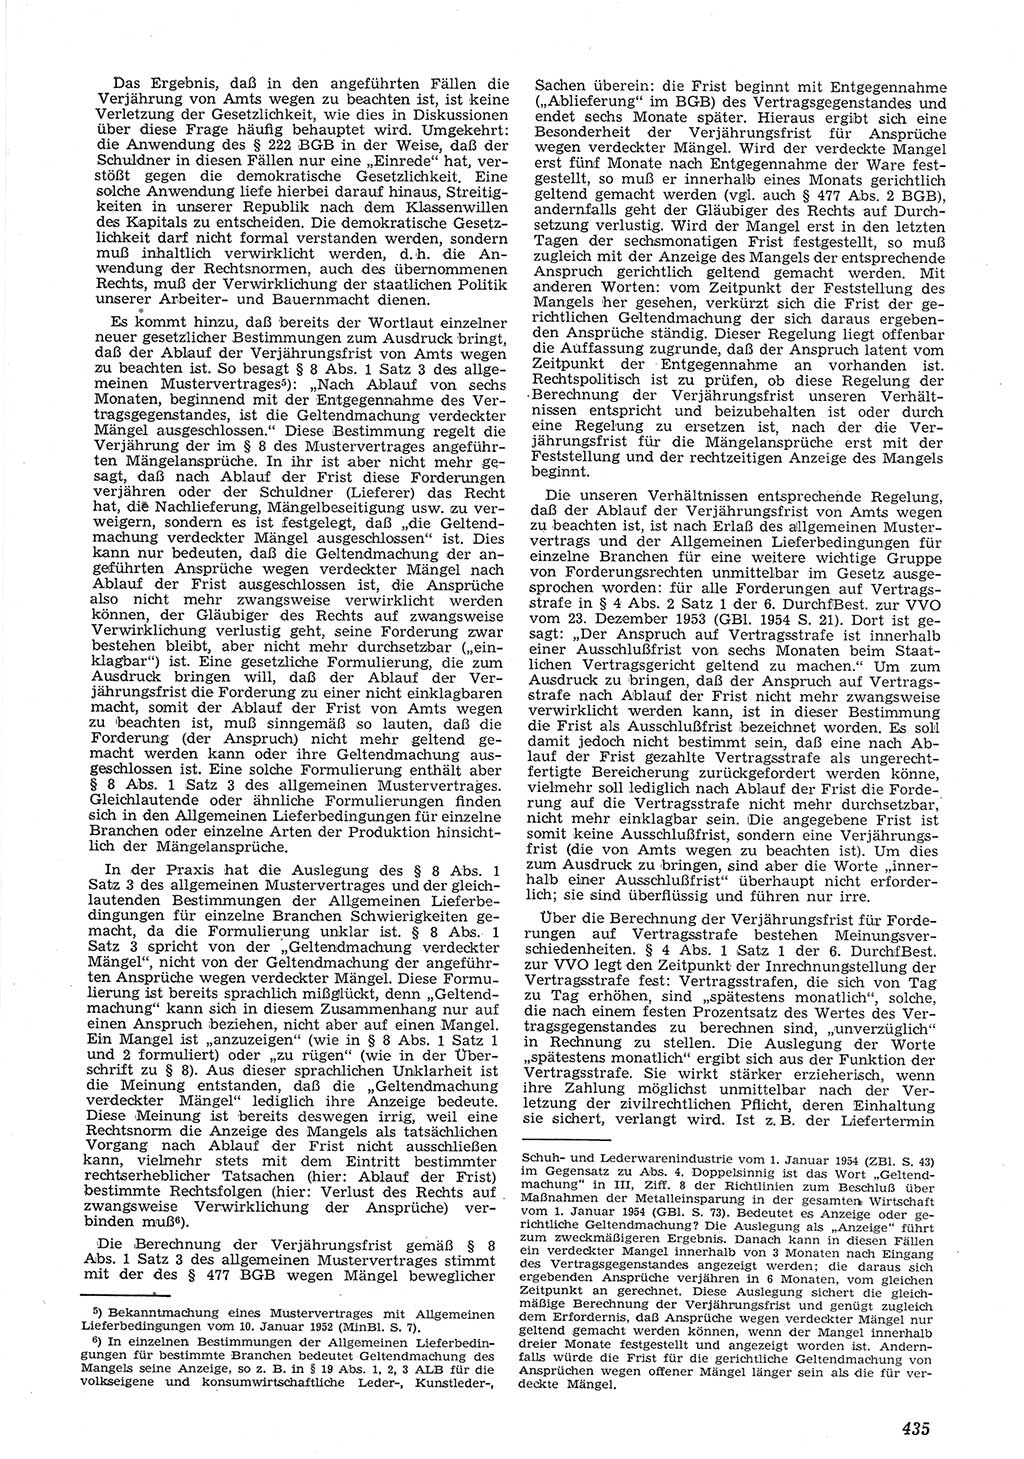 Neue Justiz (NJ), Zeitschrift für Recht und Rechtswissenschaft [Deutsche Demokratische Republik (DDR)], 8. Jahrgang 1954, Seite 435 (NJ DDR 1954, S. 435)